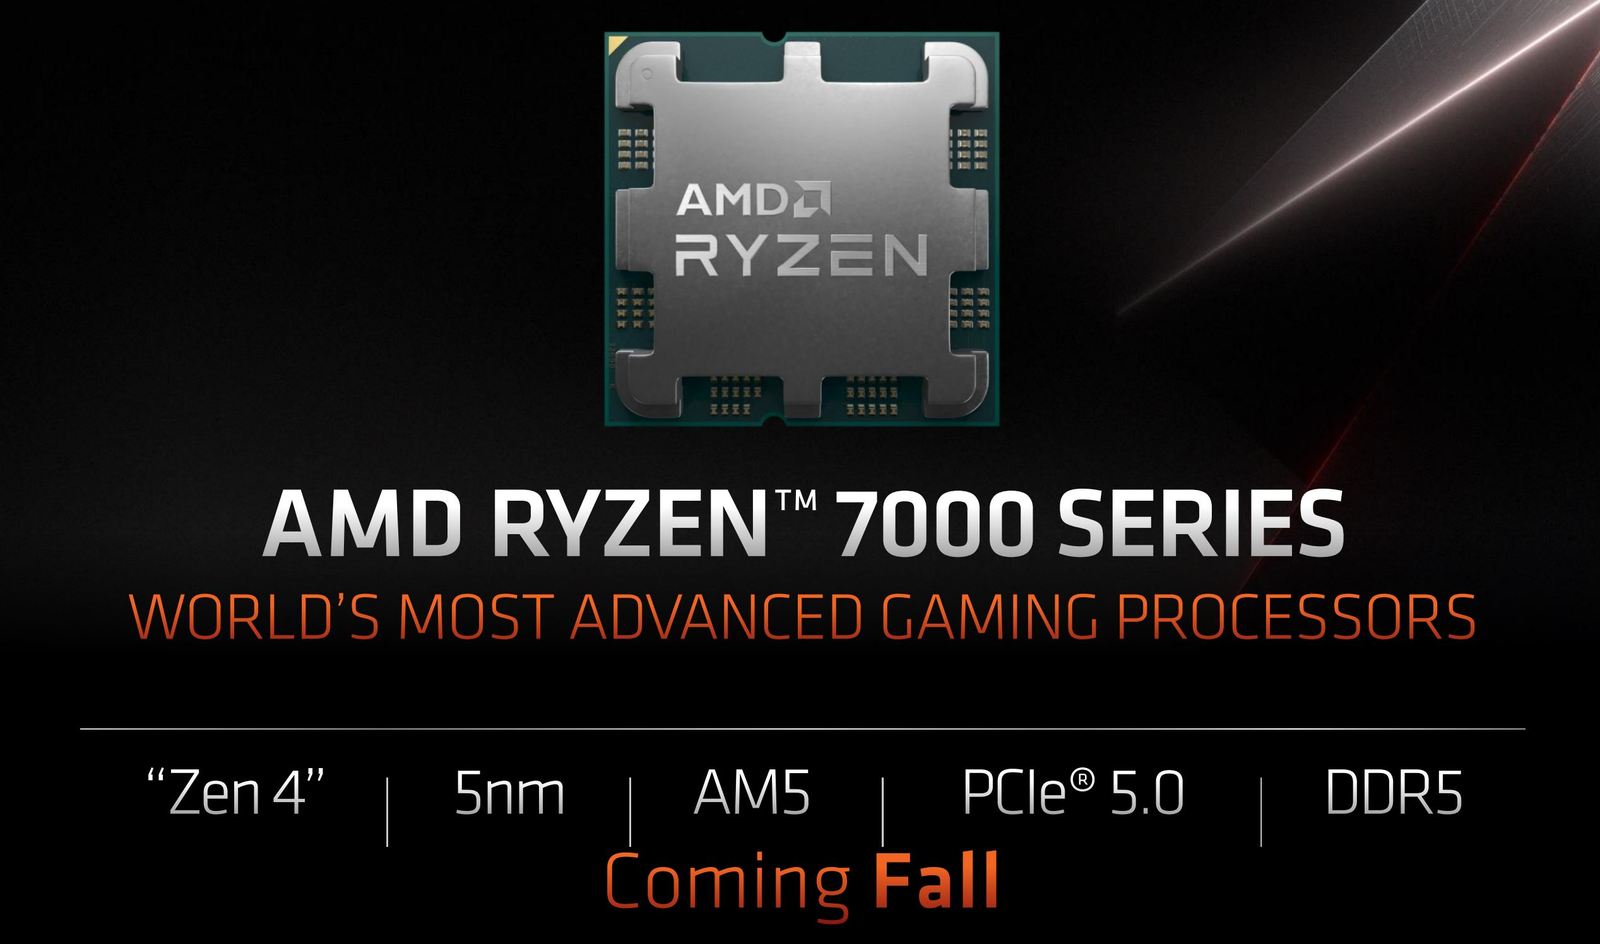 Les spécifications et les prix des processeurs de bureau AMD Ryzen 7000 ont été divulgués sur le Web